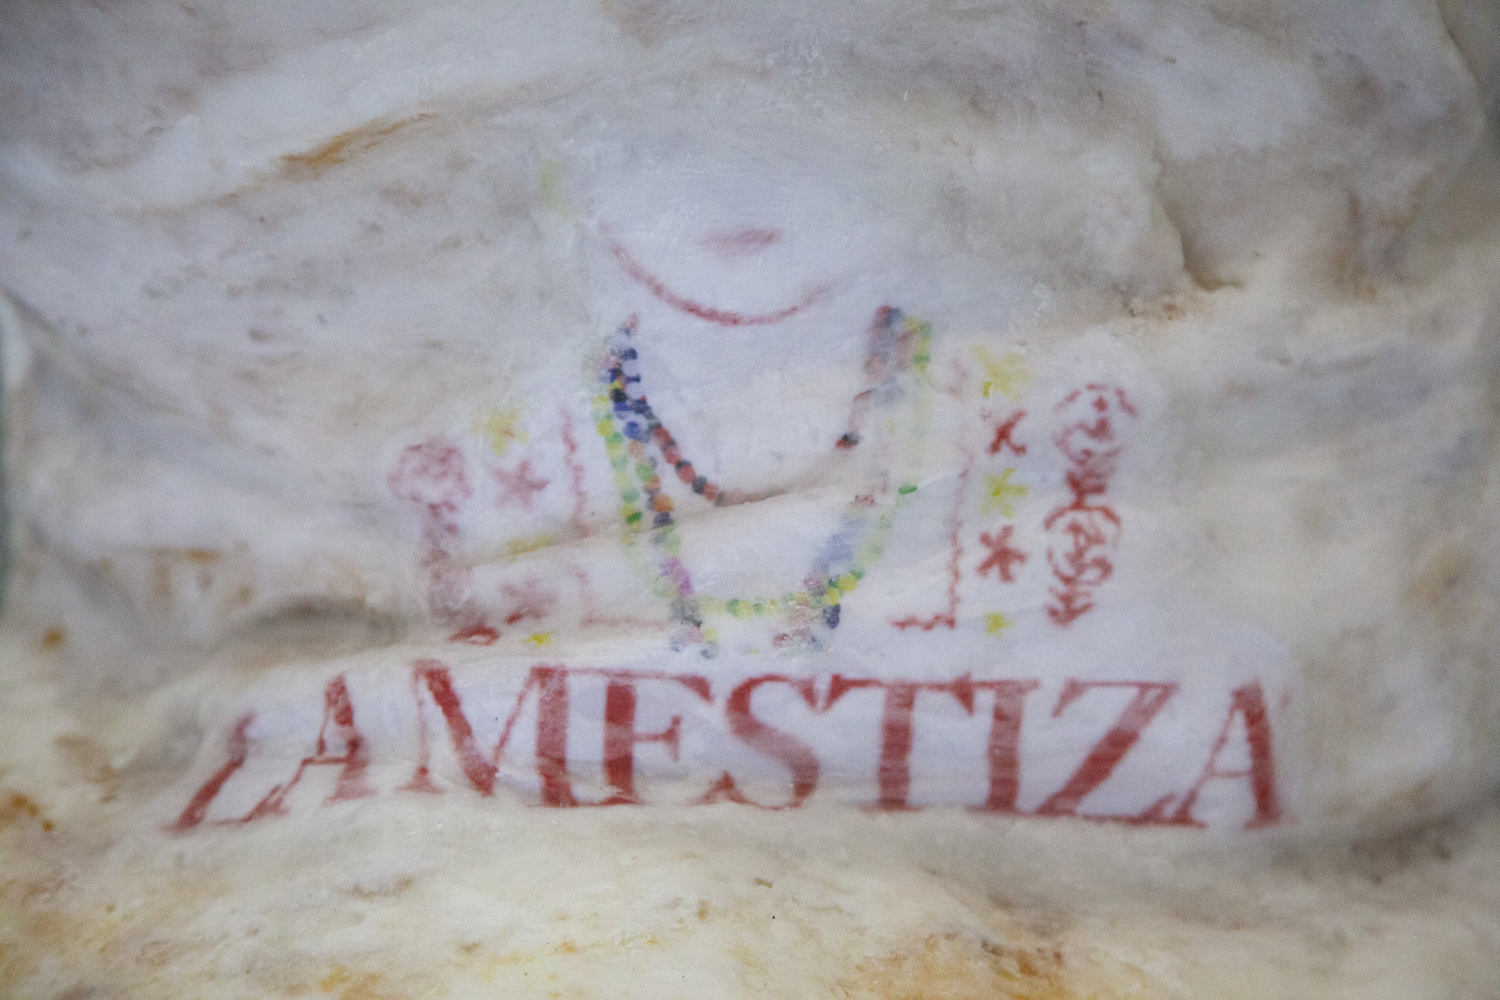 Verschwommenes Logo zeigt den Oberkörper einer bunt gekleideten Figur sowie den Schriftzug "La Mestiza".